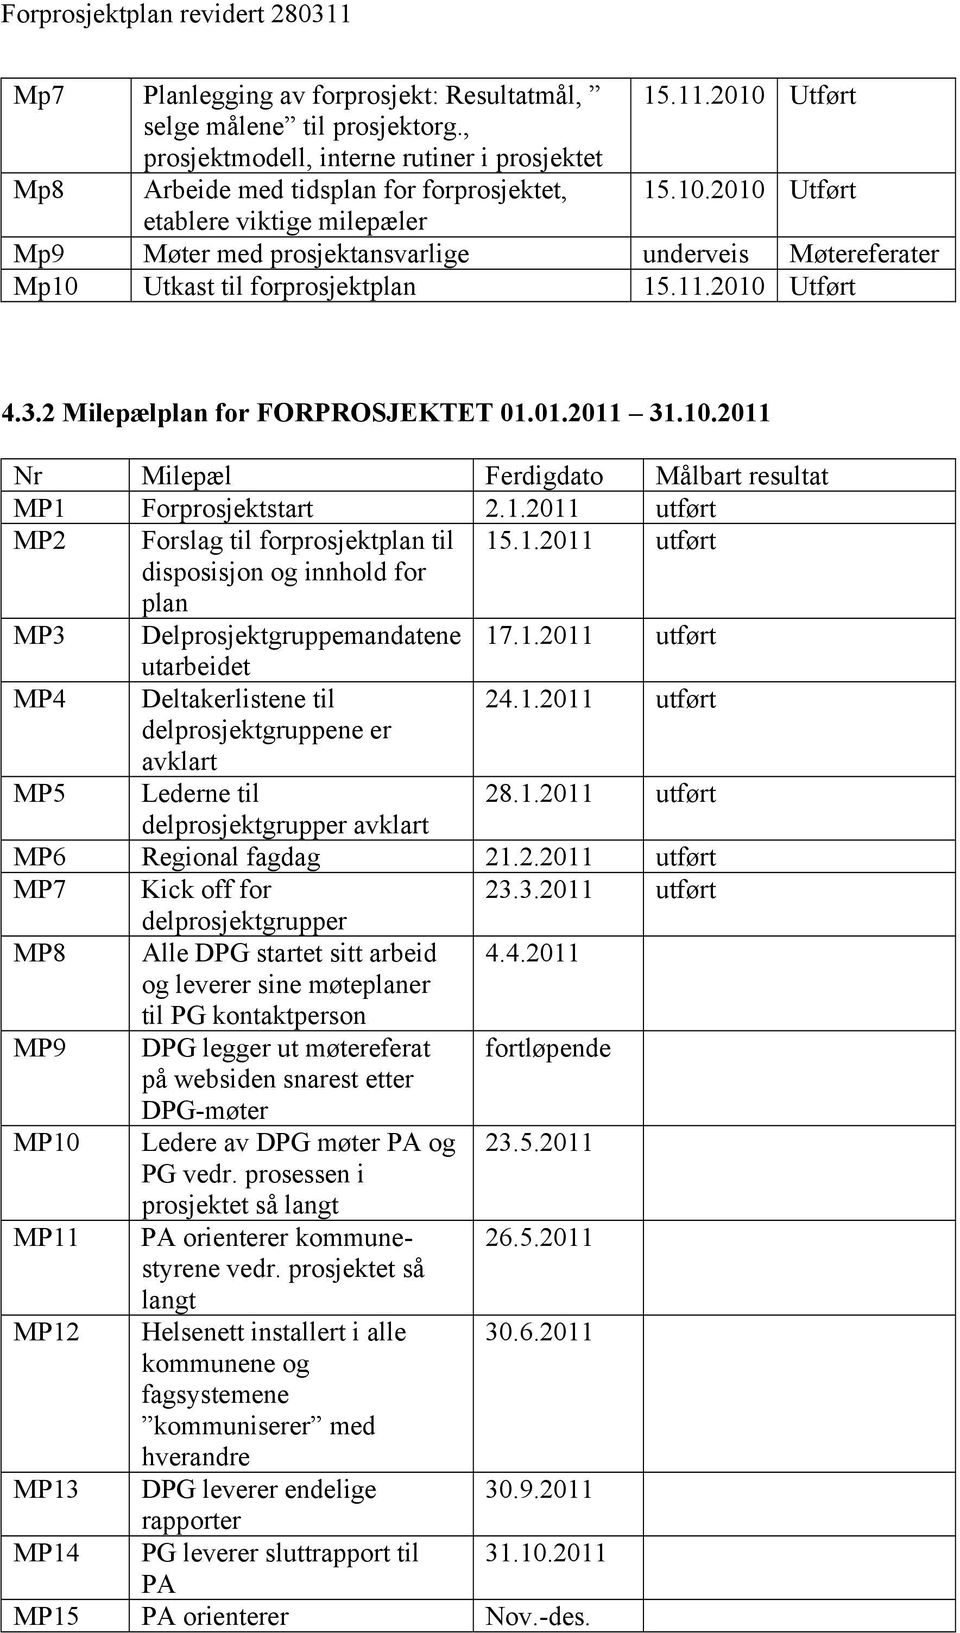 1.2011 utført utarbeidet MP4 Deltakerlistene til 24.1.2011 utført delprosjektgruppene er avklart MP5 Lederne til 28.1.2011 utført delprosjektgrupper avklart MP6 Regional fagdag 21.2.2011 utført MP7 Kick off for 23.